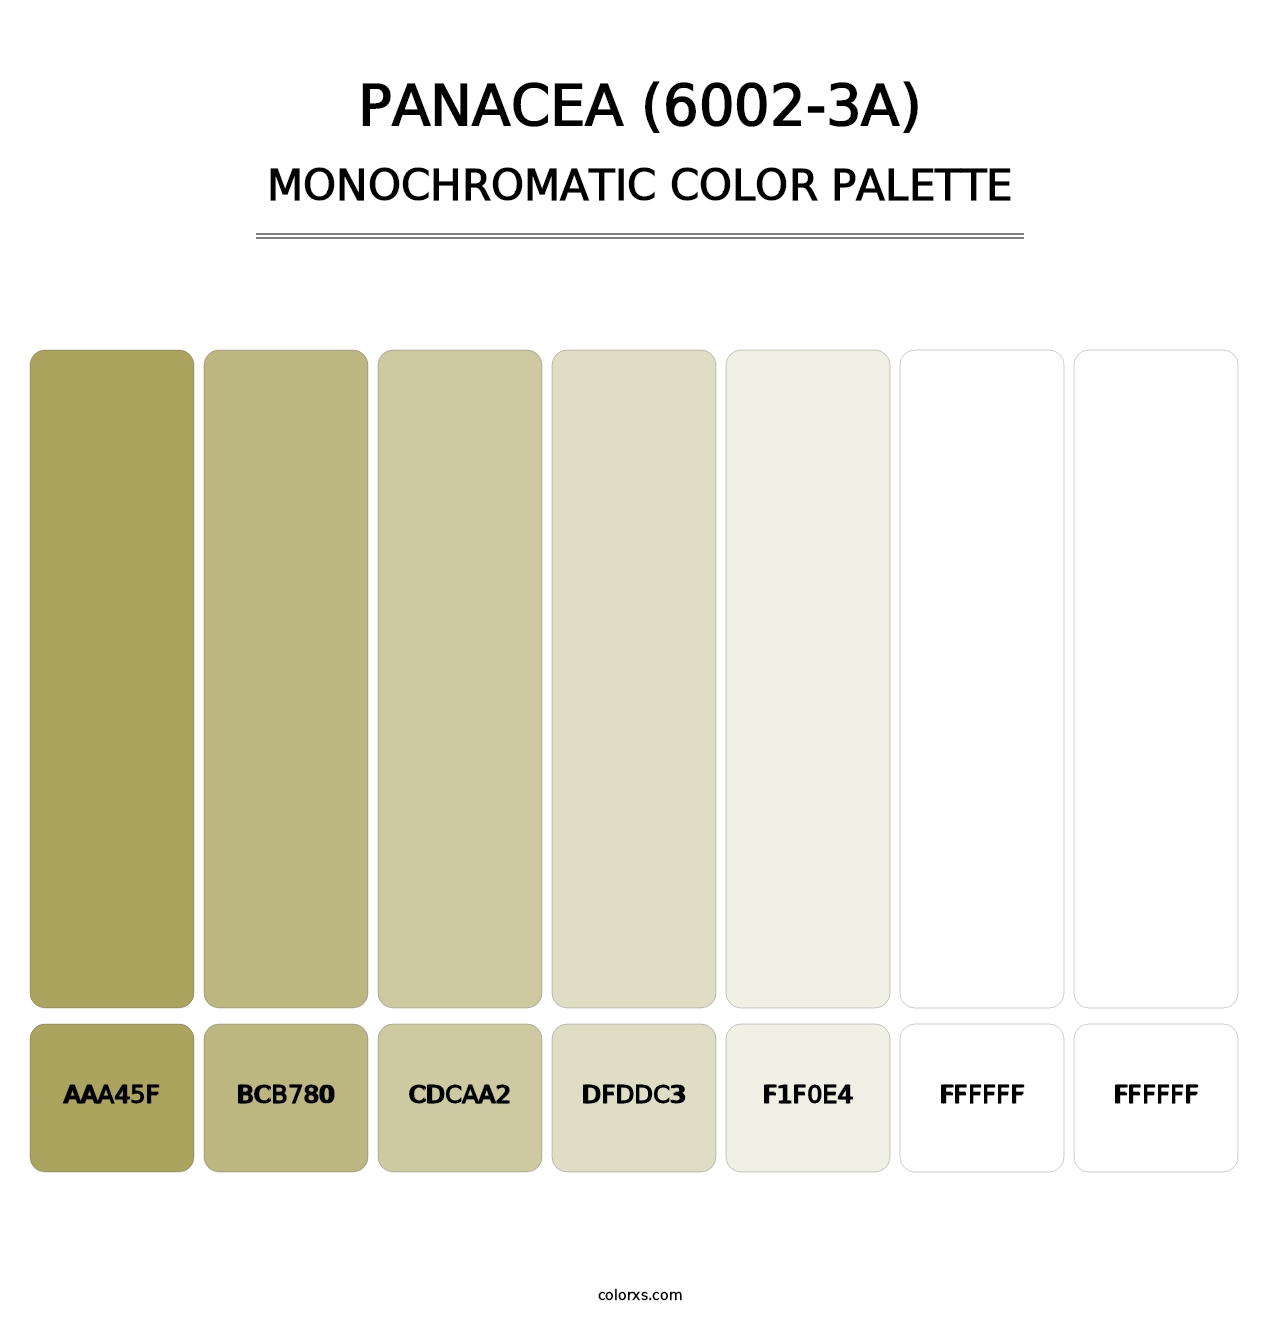 Panacea (6002-3A) - Monochromatic Color Palette